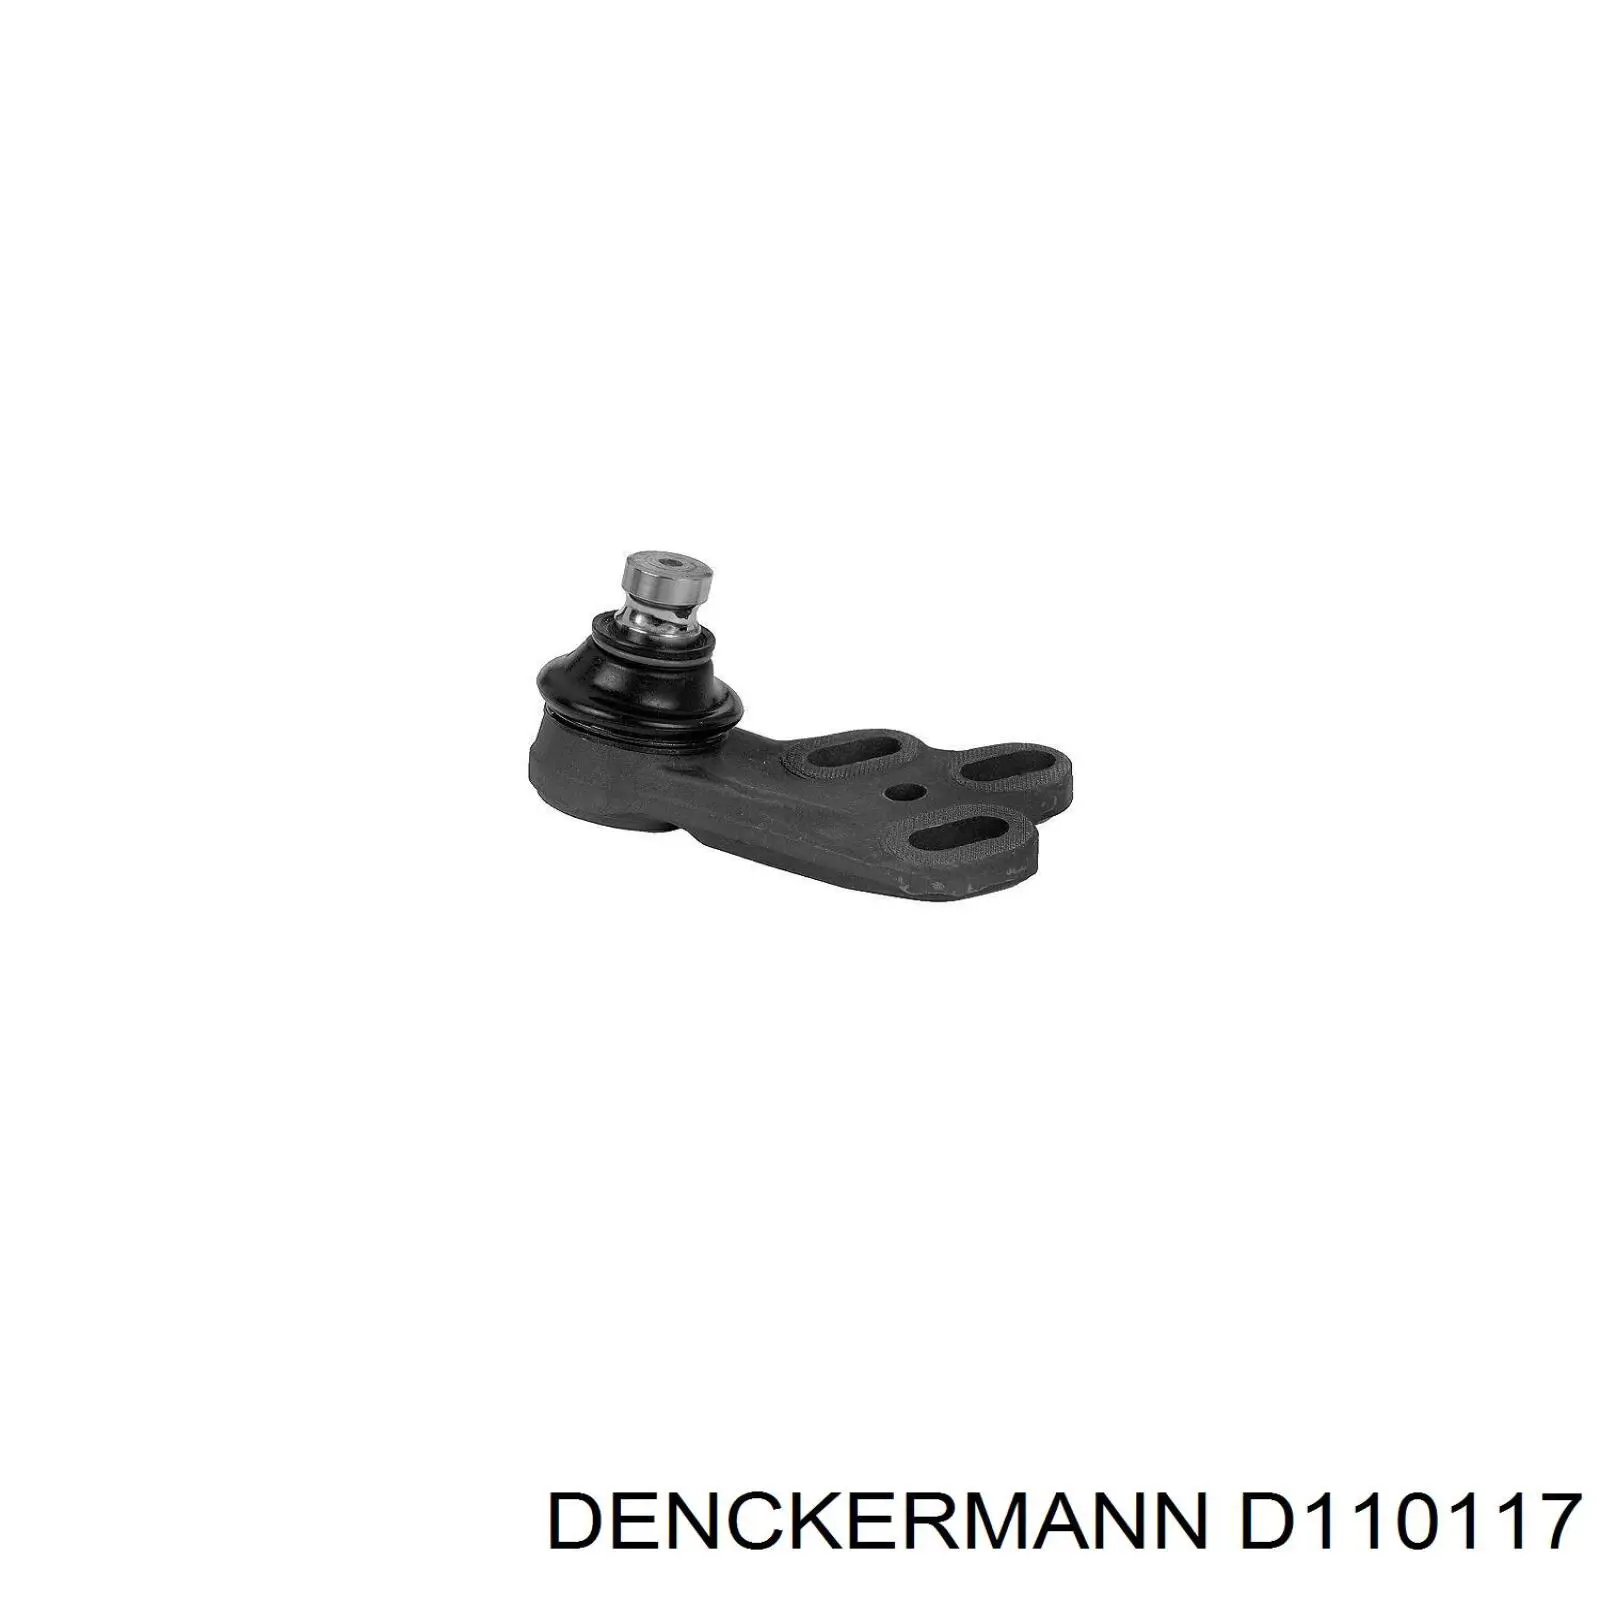 D110117 Denckermann rótula de suspensión inferior derecha